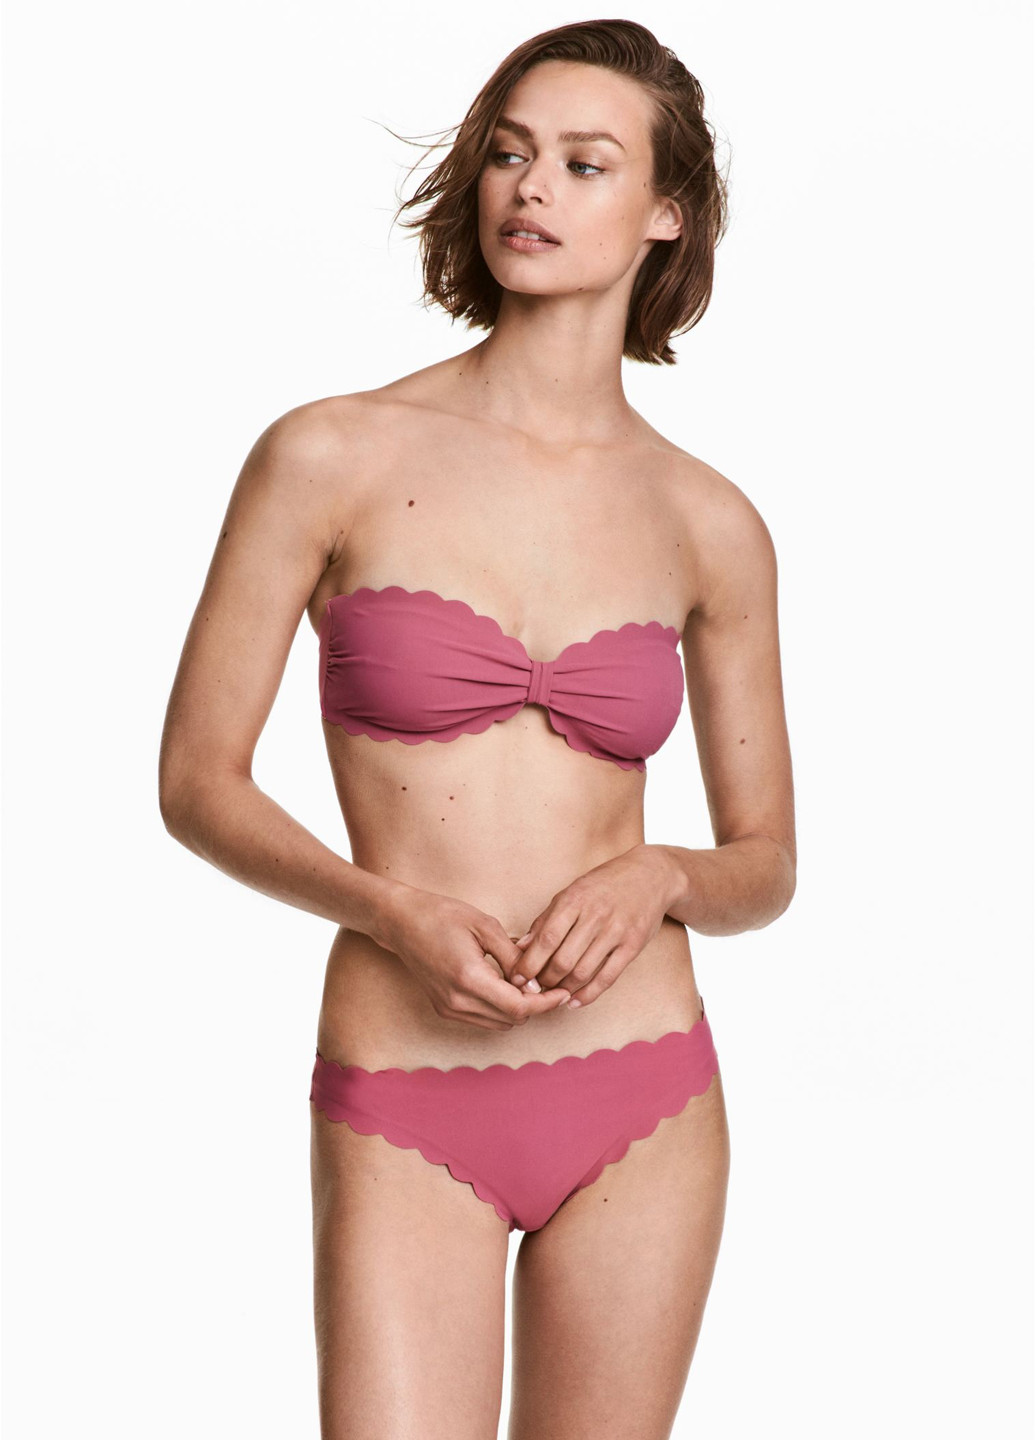 Купальні труси H&M сліп темно-рожеві пляжні поліамід